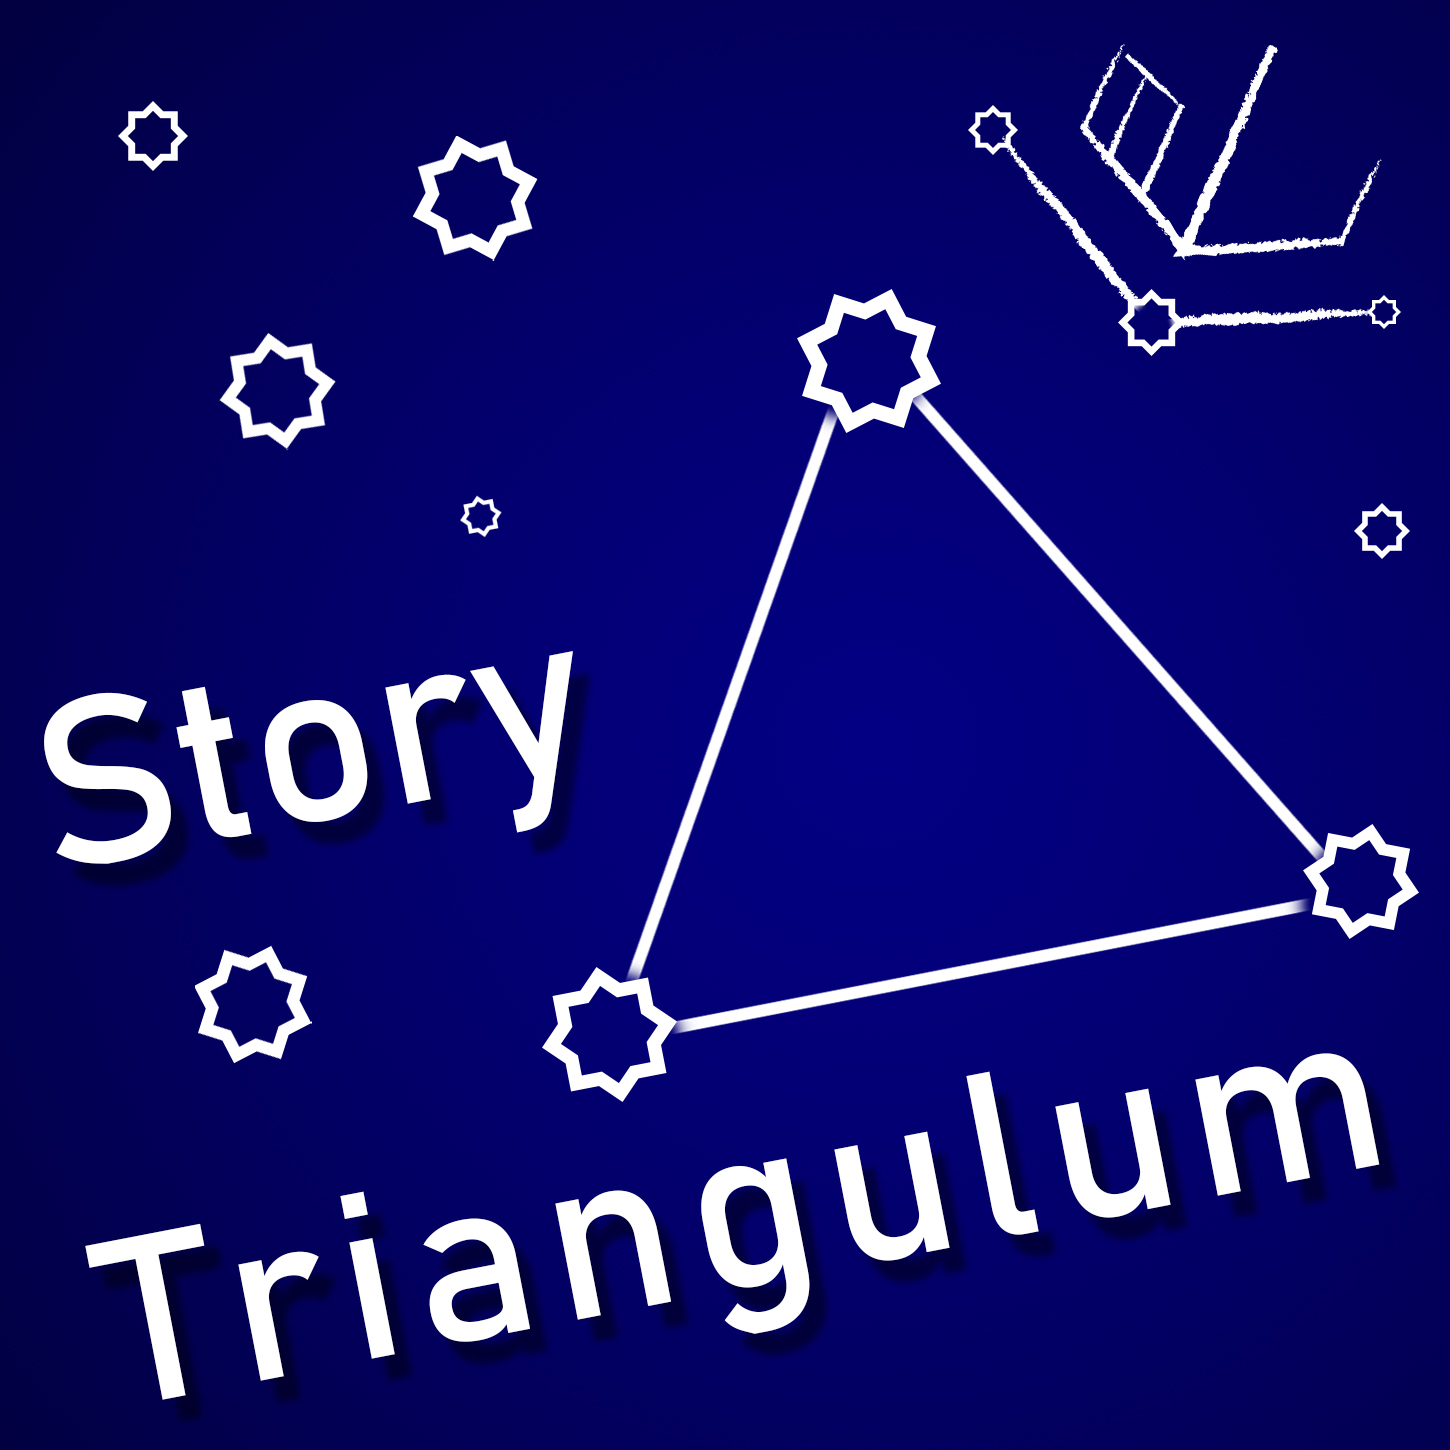 Lesson 01: Story Triangulum